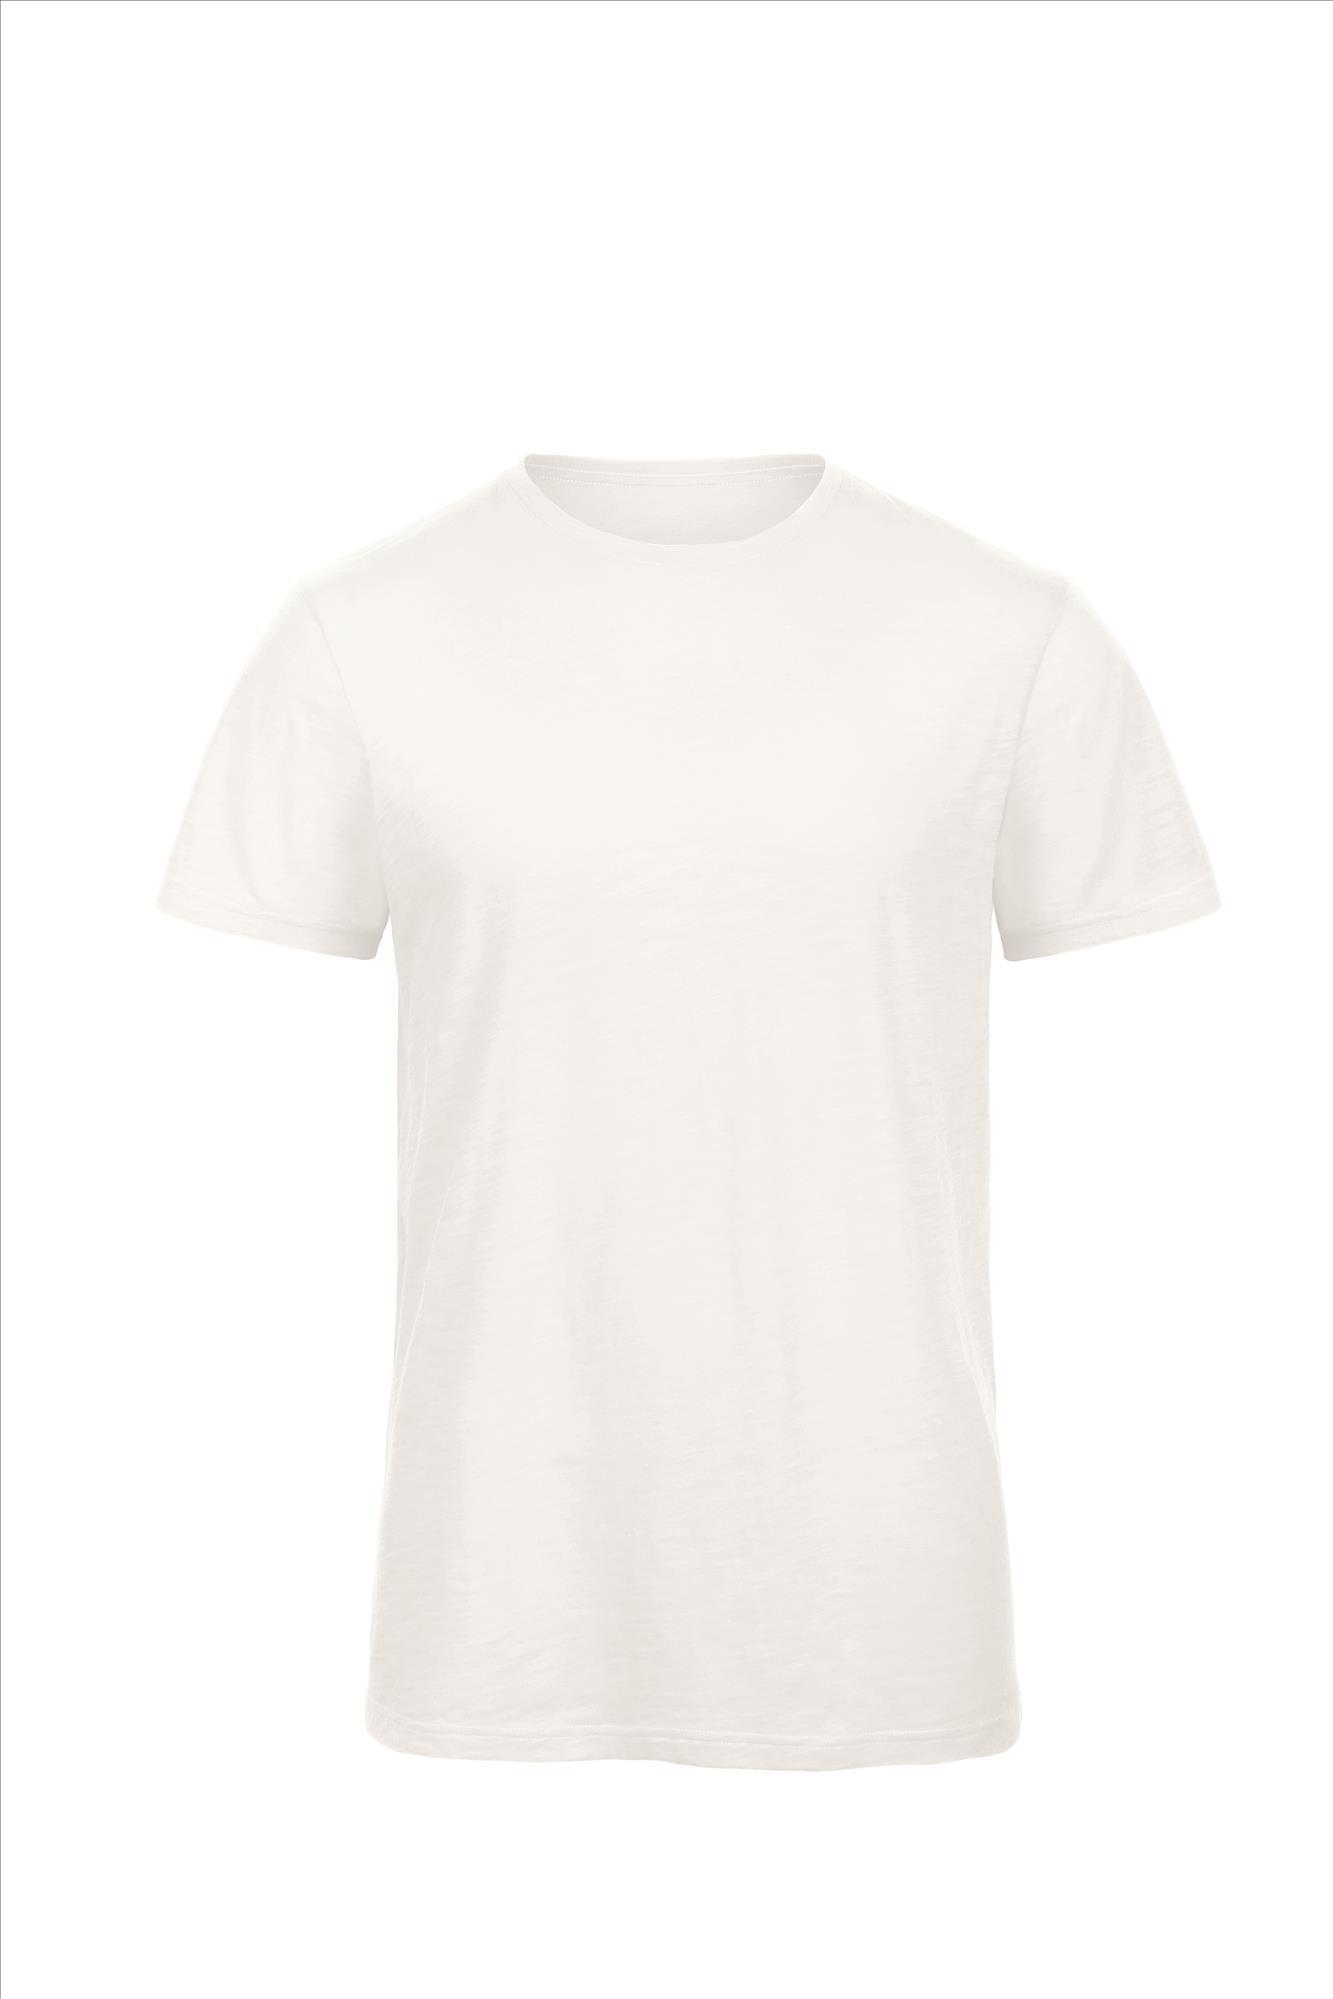 Heren T-shirt chic pure white korte mouw luxe biokwaliteit te personaliseren